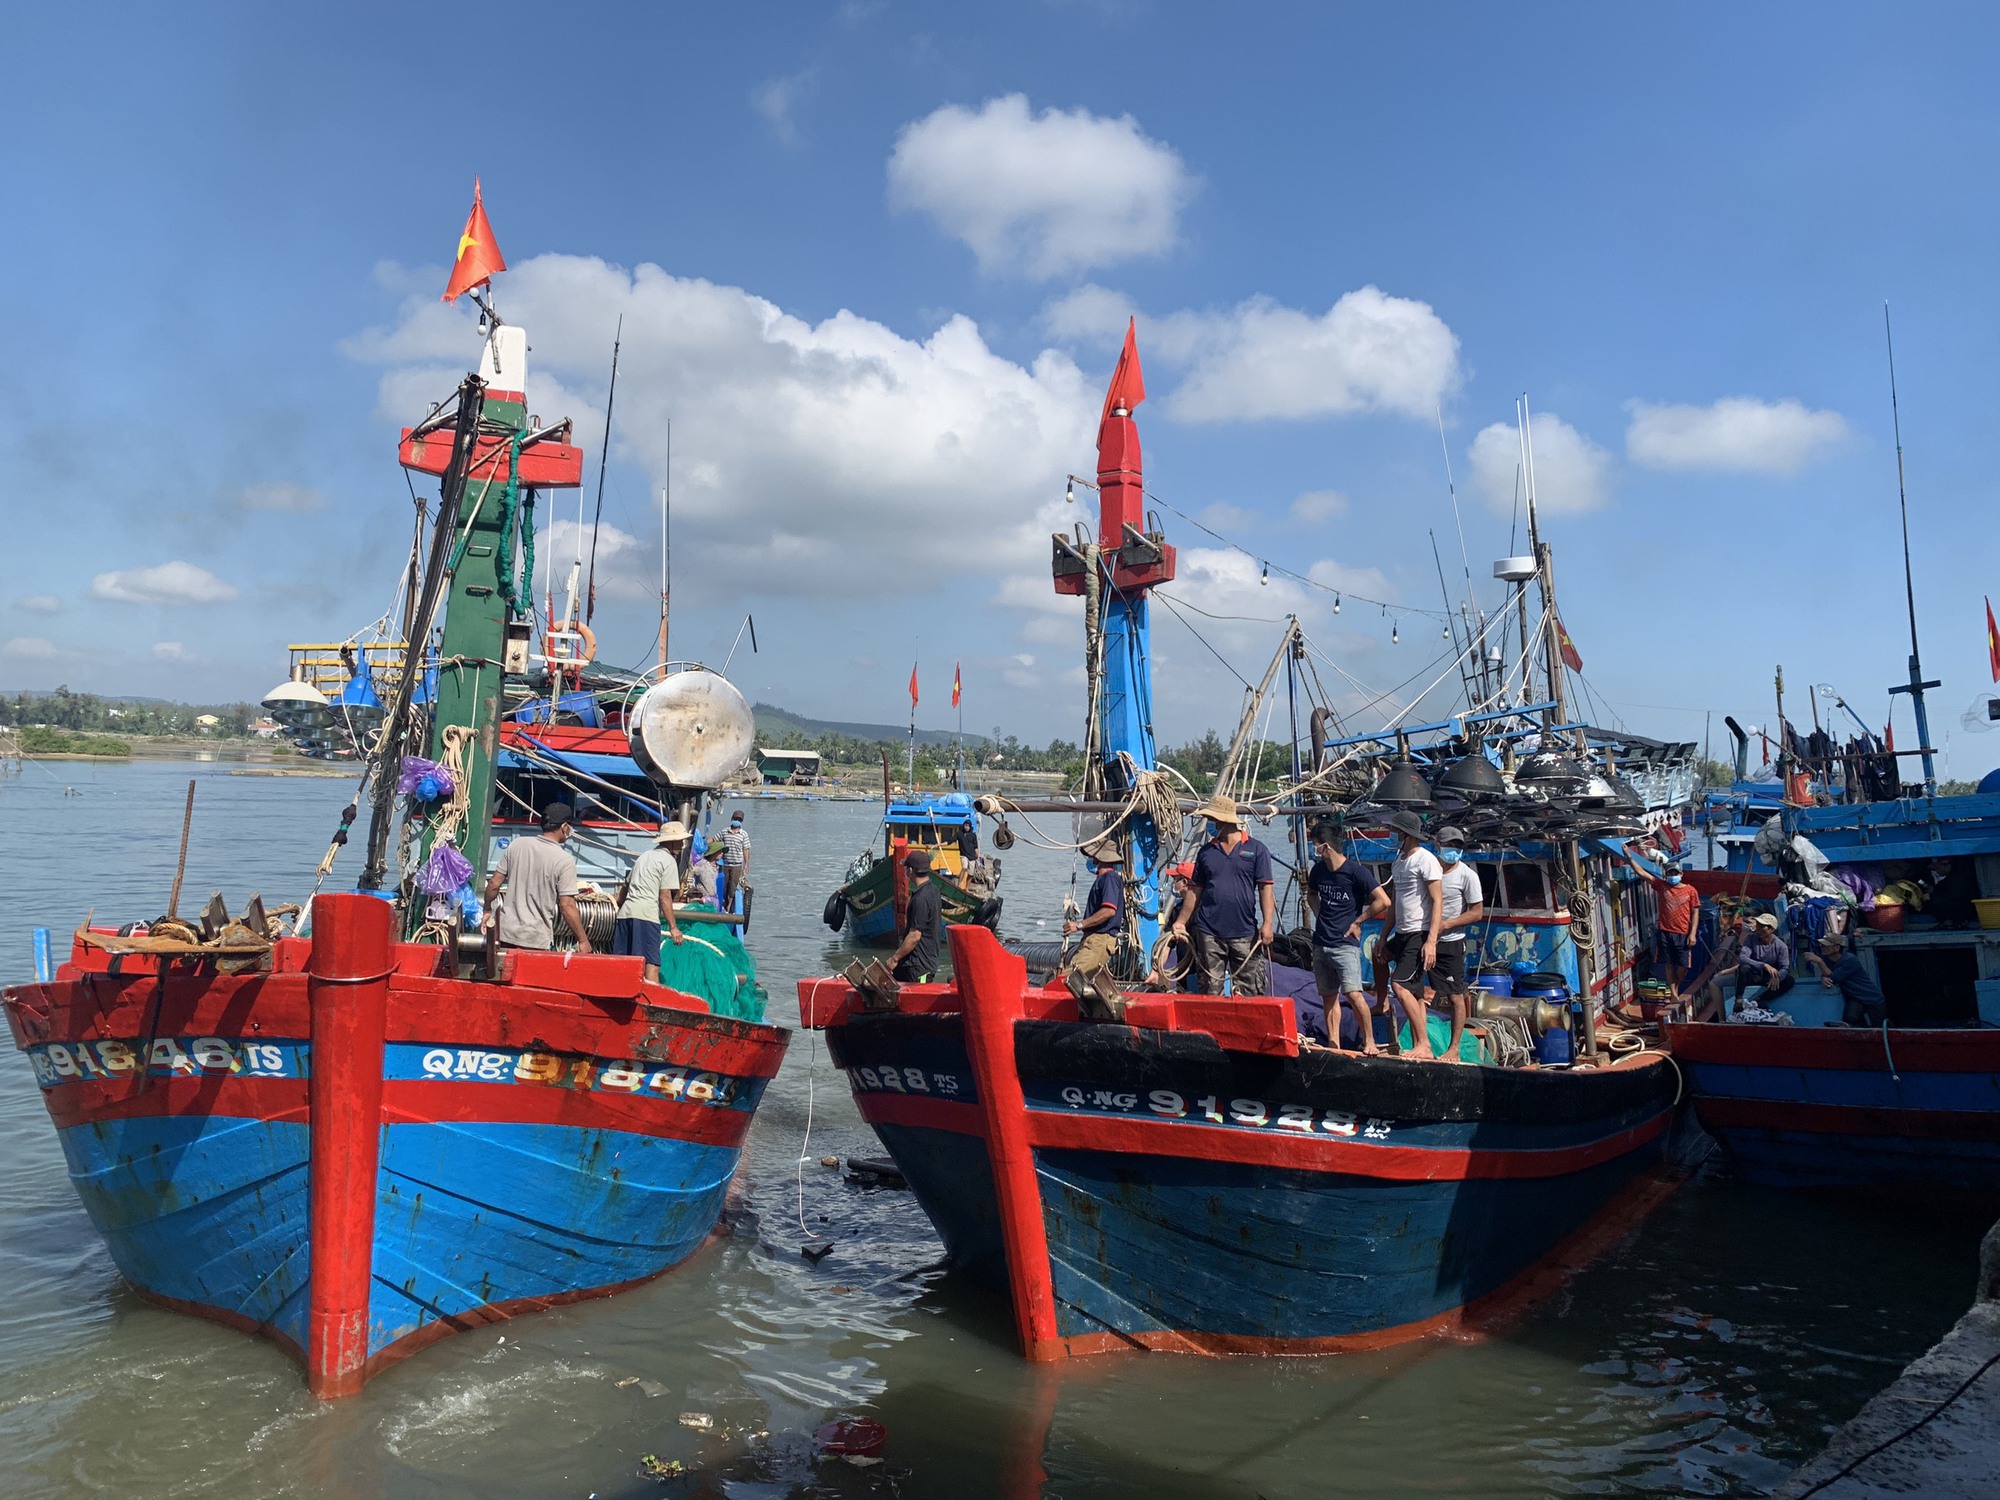 Ý thức ngư dân là yếu tố cốt lõi để bảo vệ sự phát triển bền vững của ngành đánh bắt thủy hải sản. Hãy xem hình ảnh liên quan để tìm hiểu thêm về cách ngư dân Việt Nam đã nỗ lực giữ gìn tài nguyên biển và góp phần bảo vệ môi trường.